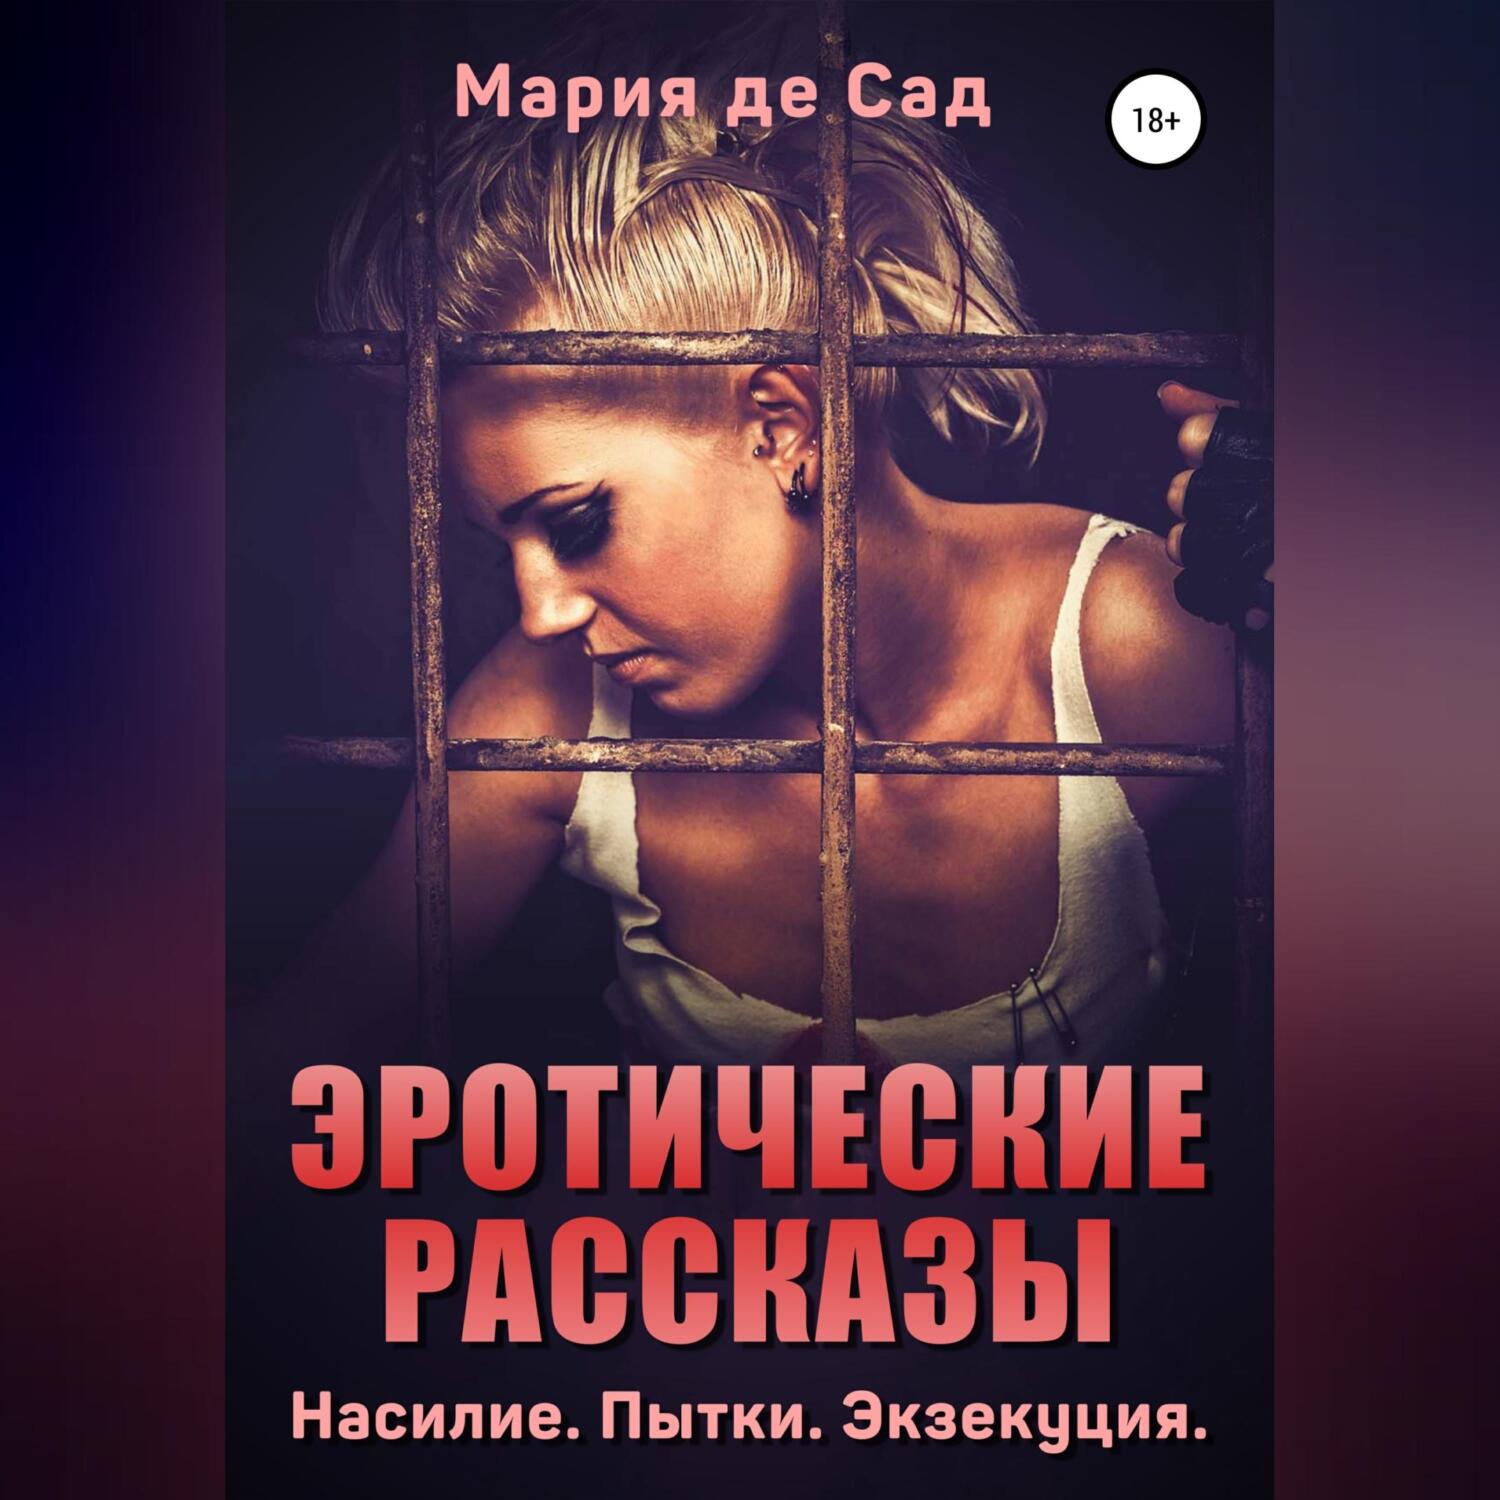 Эротические рассказы. Порно истории на riosalon.ru